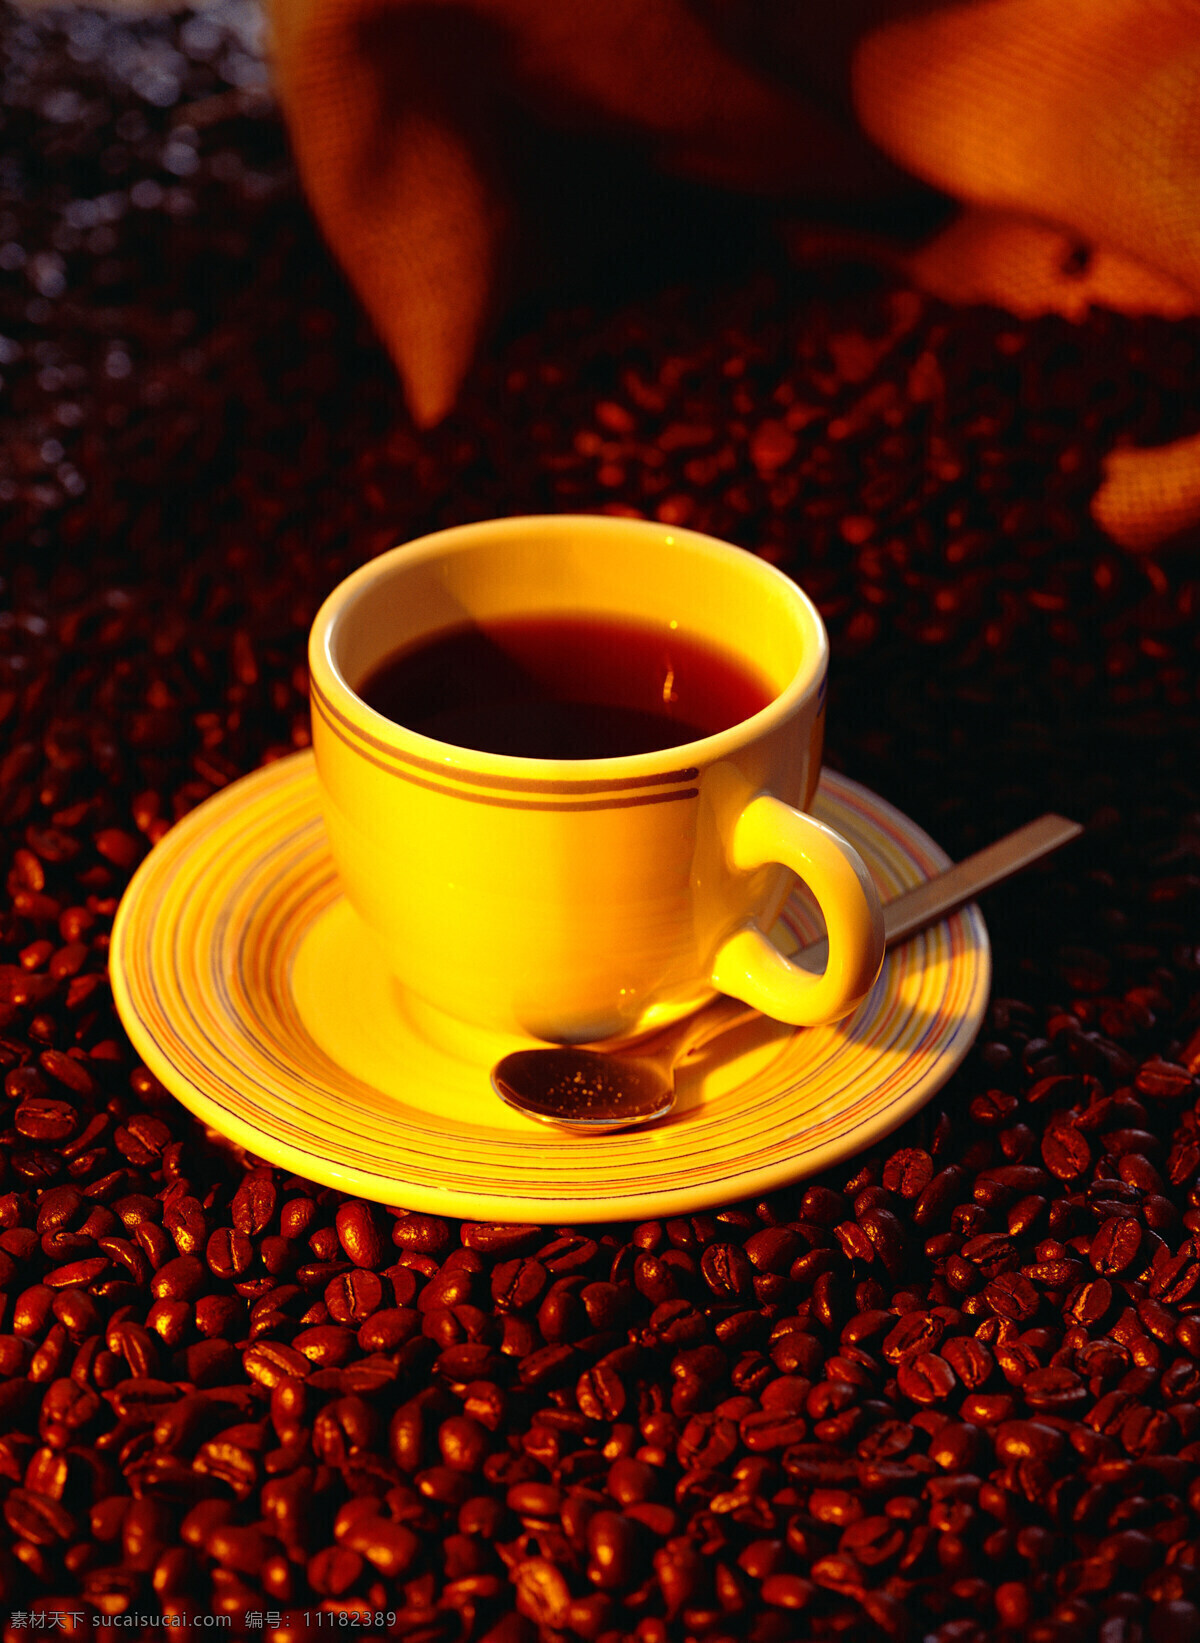 咖啡豆 上 浓香 咖啡 一堆咖啡豆 颗粒 果实 饱满 许多 很多 coffee 褐色 托盘 杯子 勺子 麻袋 包装 铺垫 高清图片 咖啡图片 餐饮美食